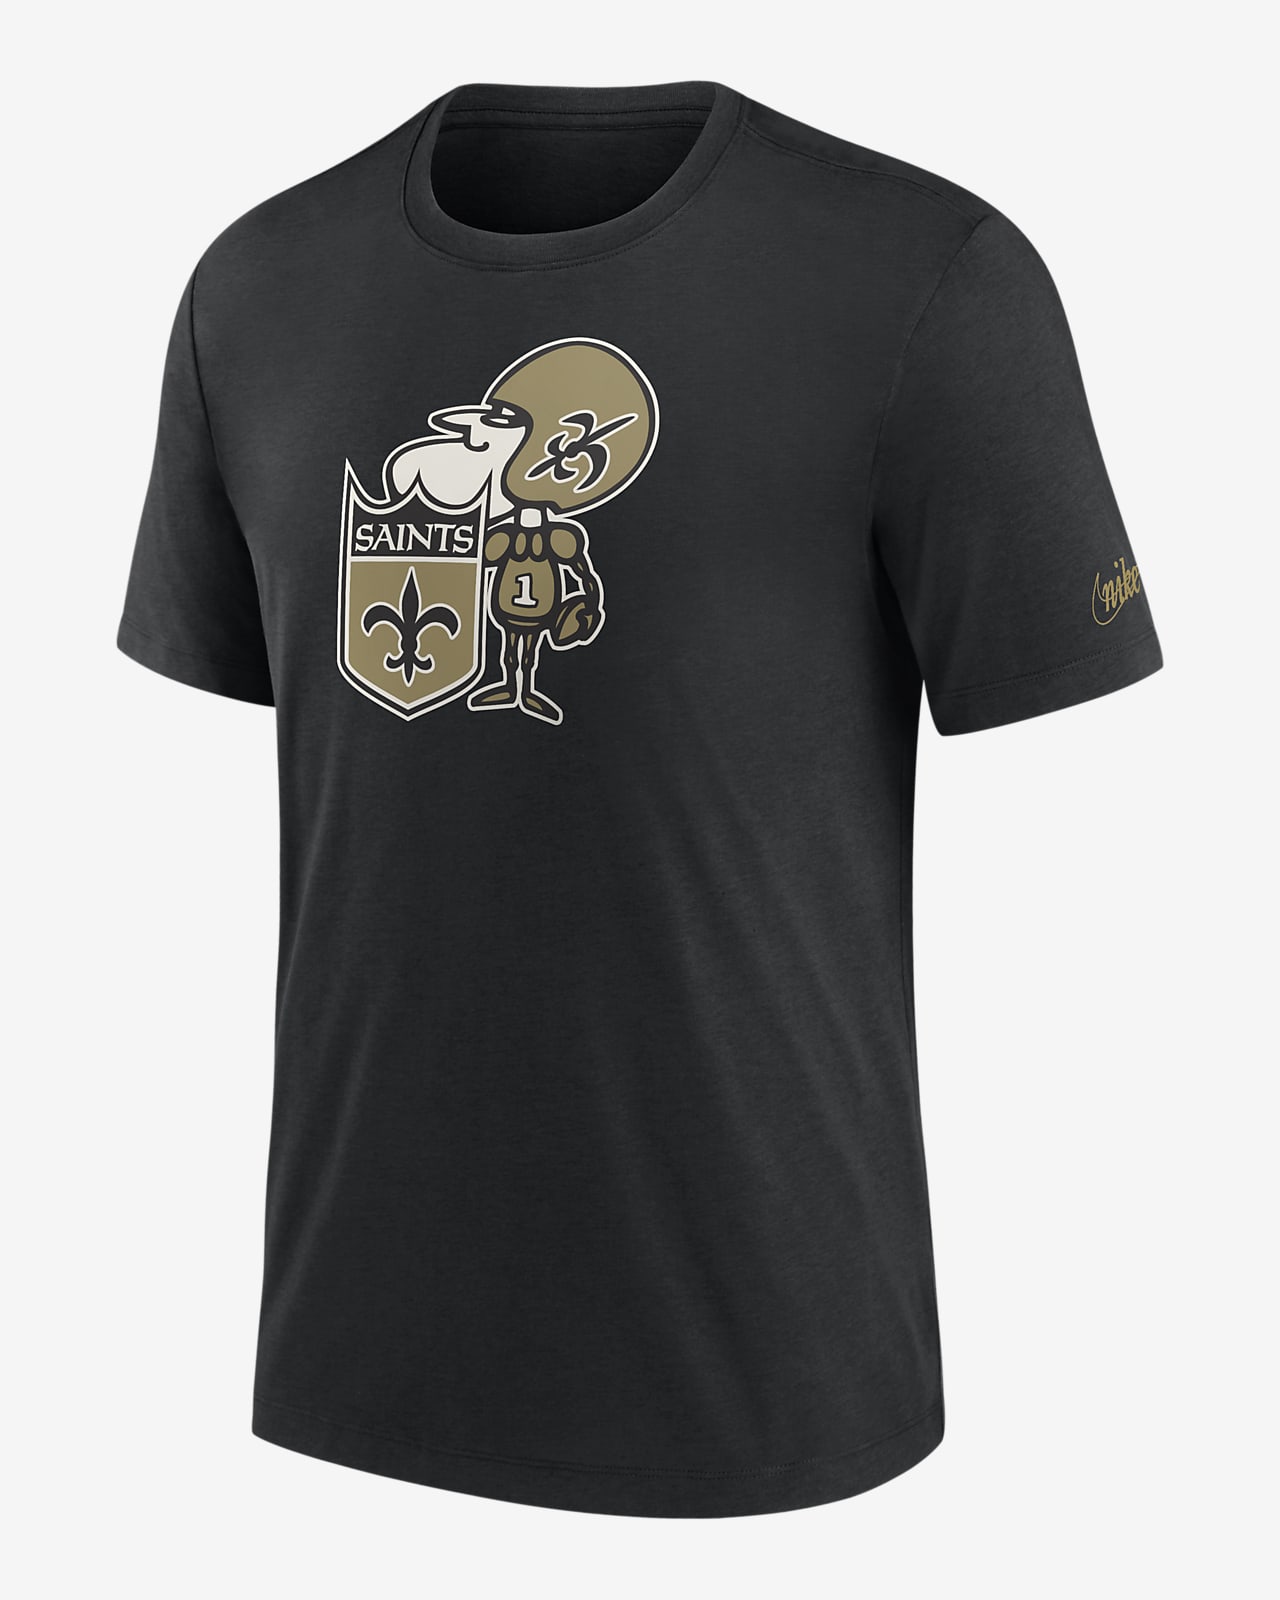 New Orleans Saints Rewind Logo Men's Nike NFL T-Shirt